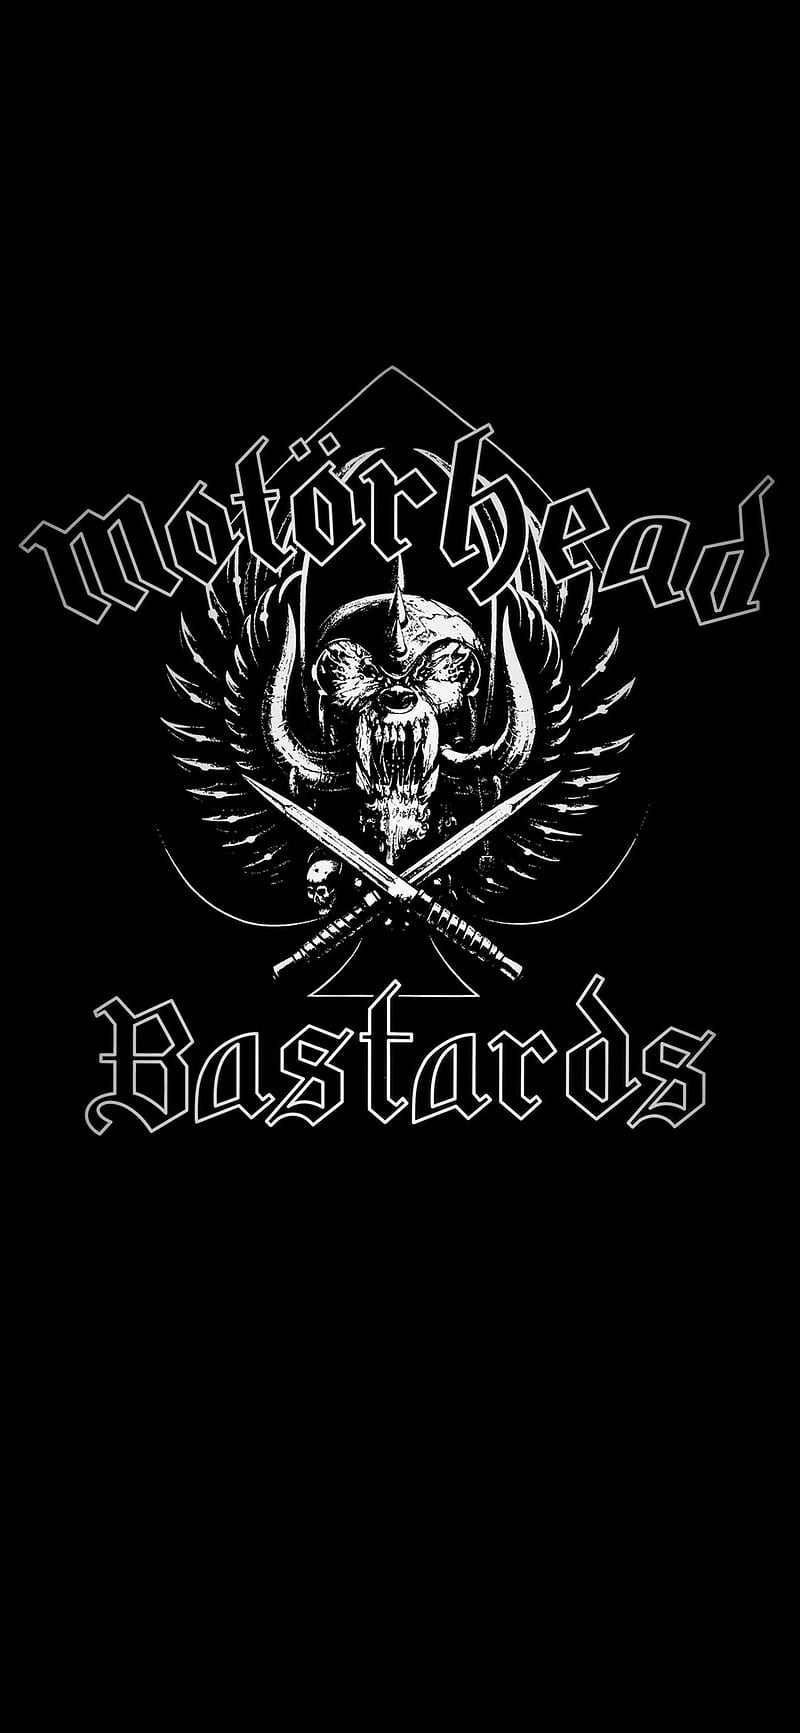 Motorhead logo, cd cover, lemmy kilmister, motorhead bastards, HD phone wallpaper